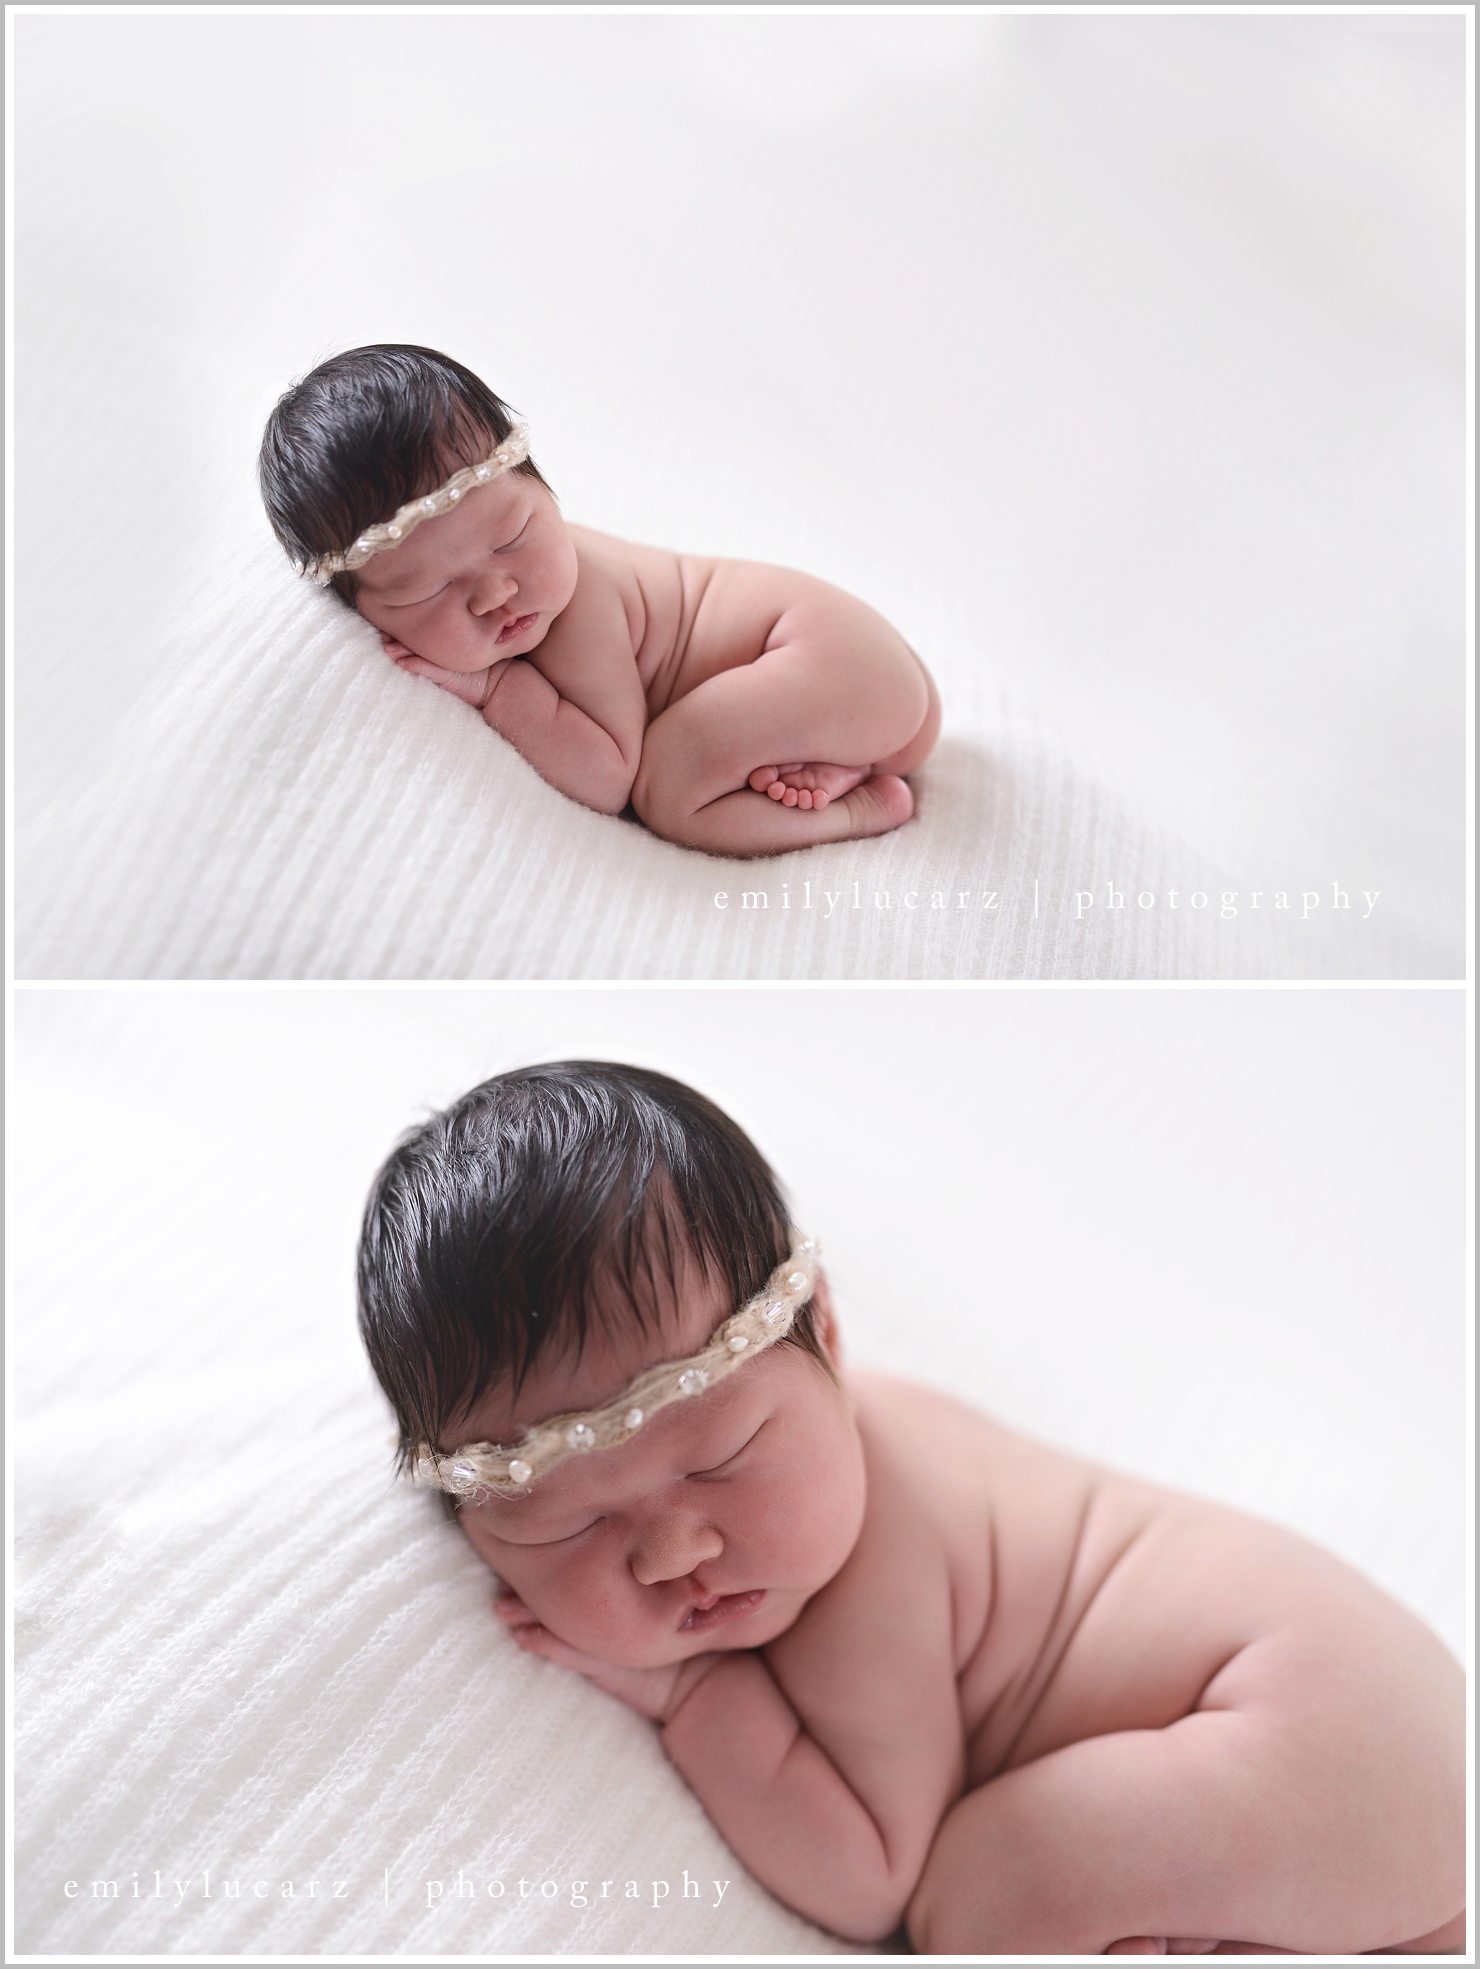 Emily Lucarz Photography newborn 2